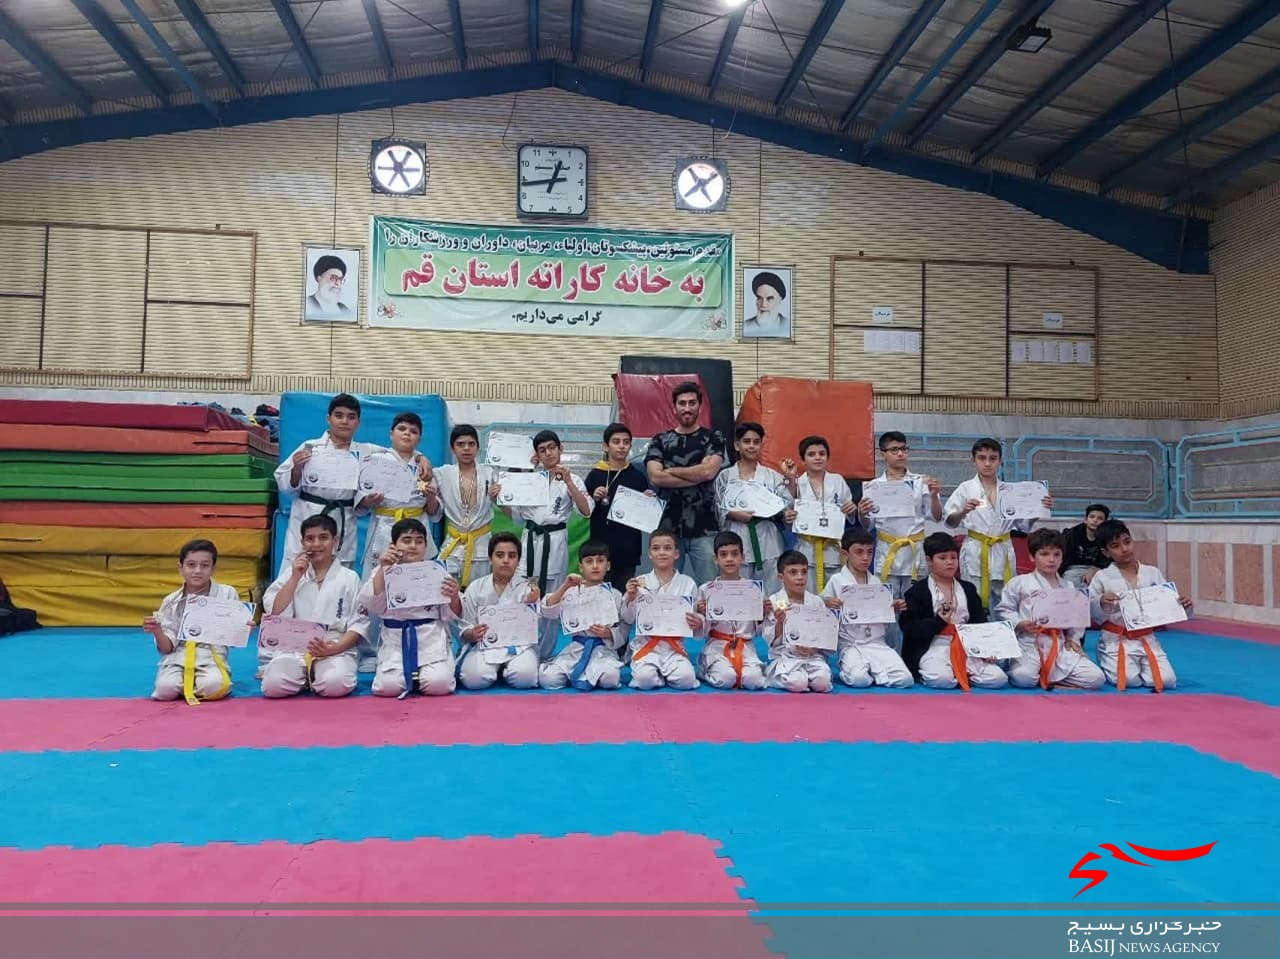 بسیجیان پایگاه شهید سید مصطفی خمینی در مسابقات استانی کاراته درخشیدند